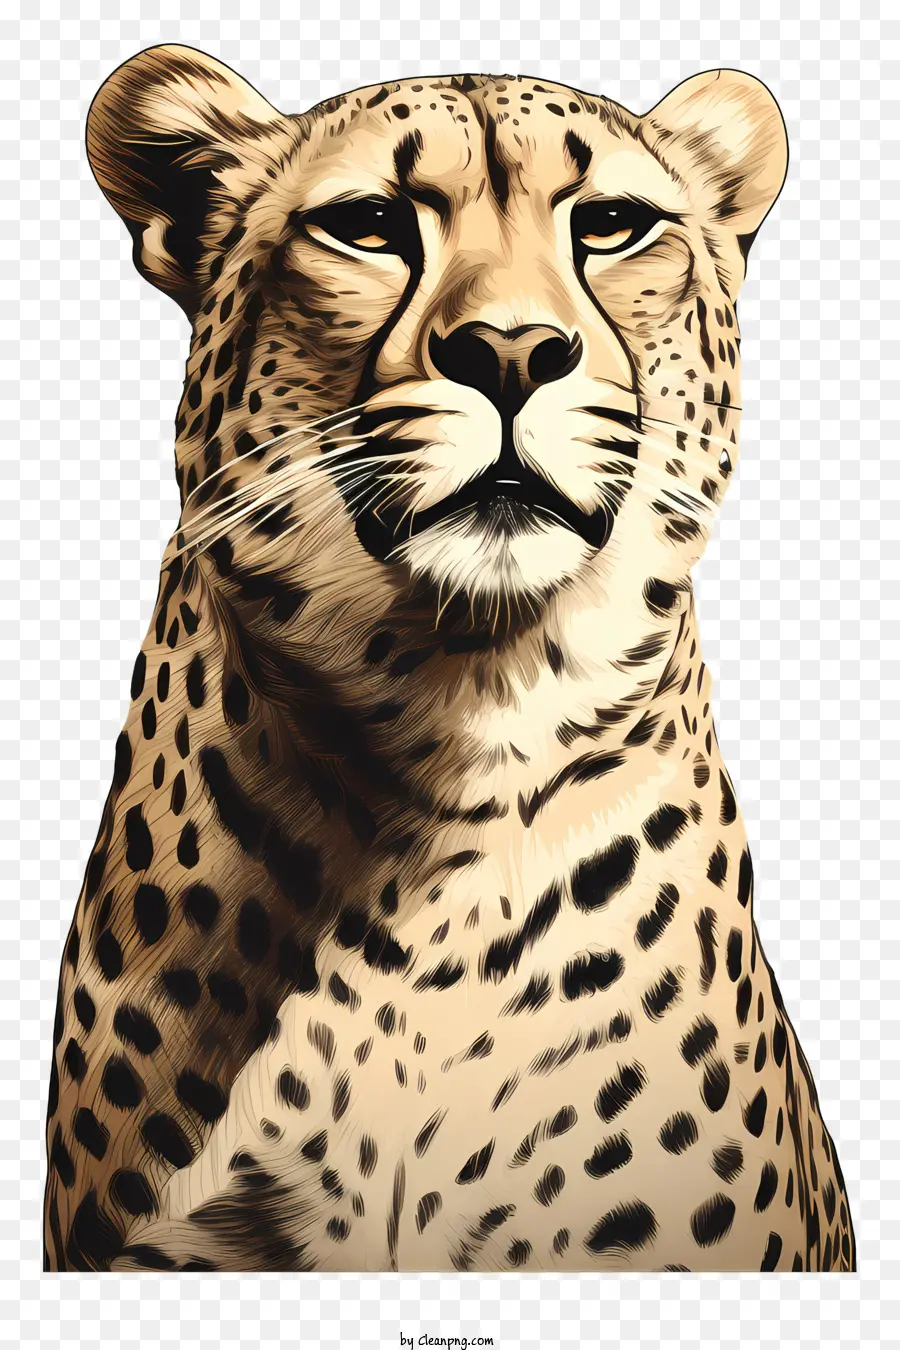 Leopard Wildlife Animal Predator Nature - Leopard im tiefen Gedanken, ausstrahlte Kraft